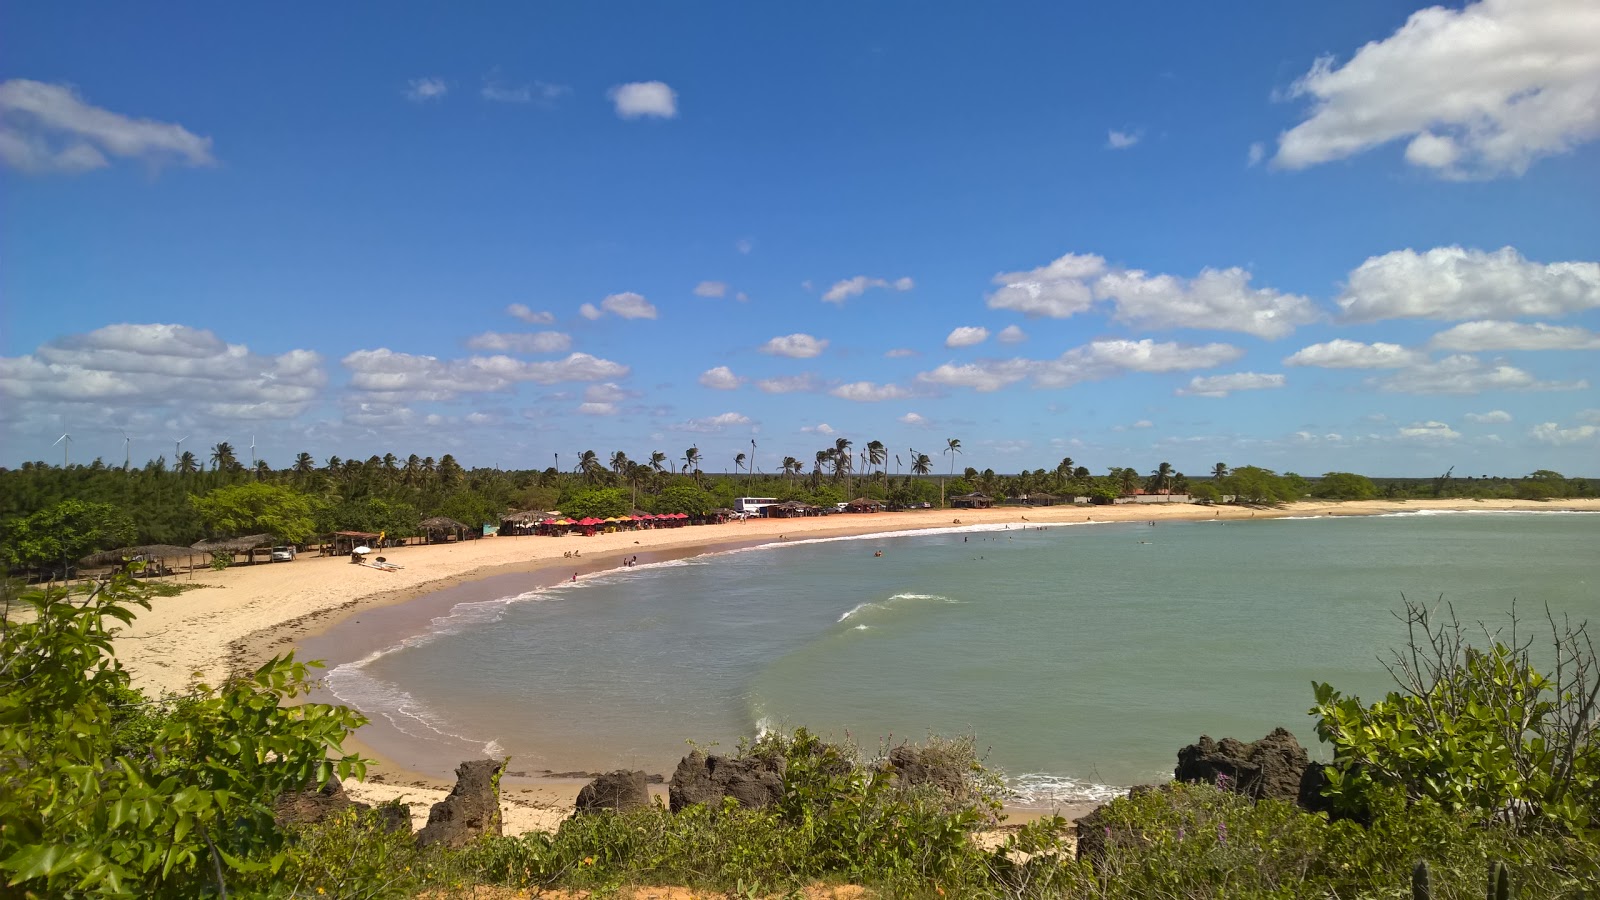 Foto av Tourinhos strand med hög nivå av renlighet